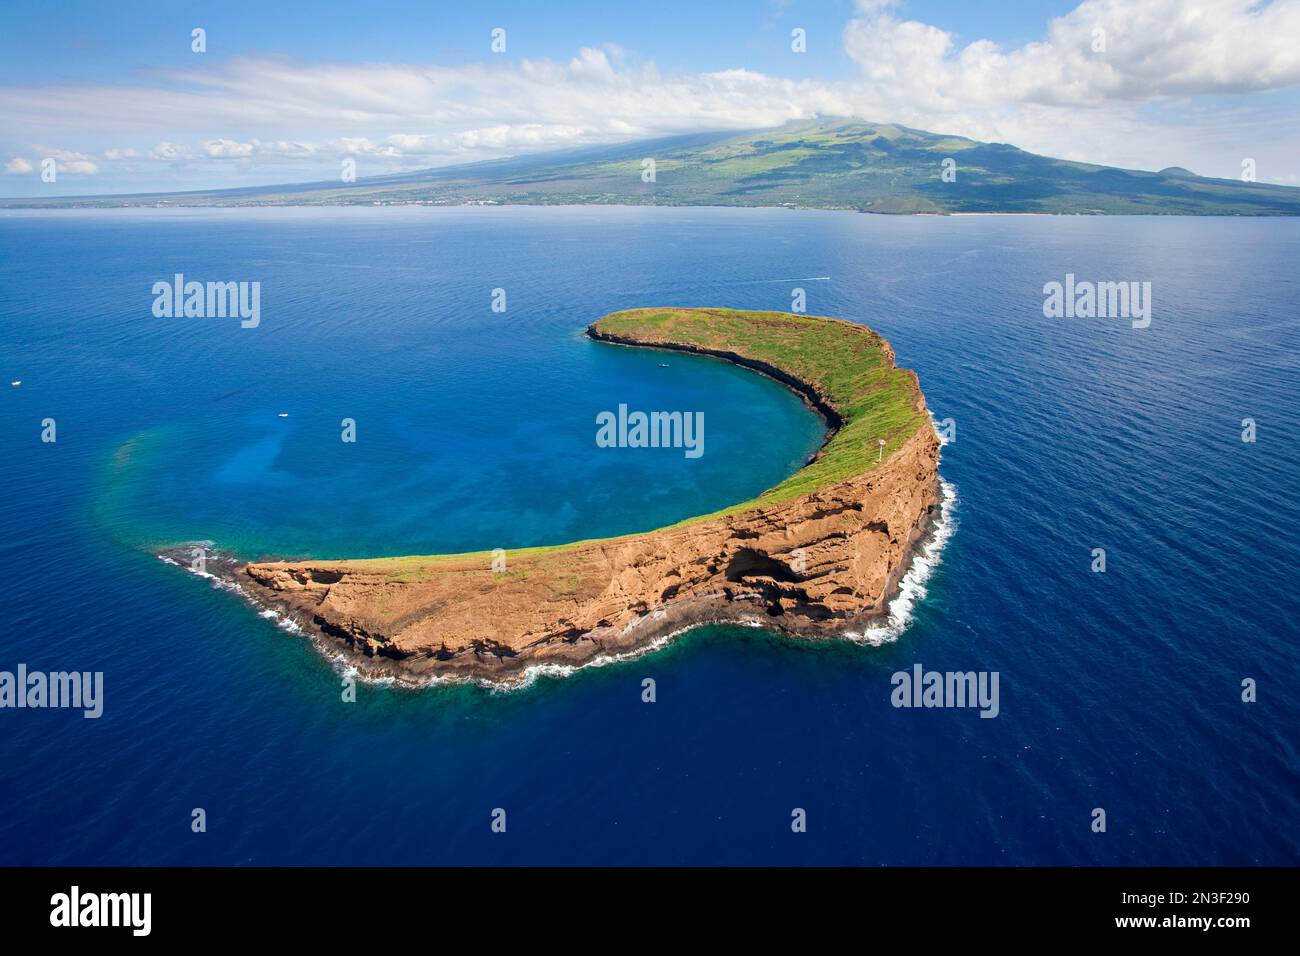 Veduta aerea del cratere Molokini e dell'isolotto, famoso luogo per lo snorkeling al largo della costa di Maui. Molokini è una riserva marina protetta dallo Stato di... Foto Stock